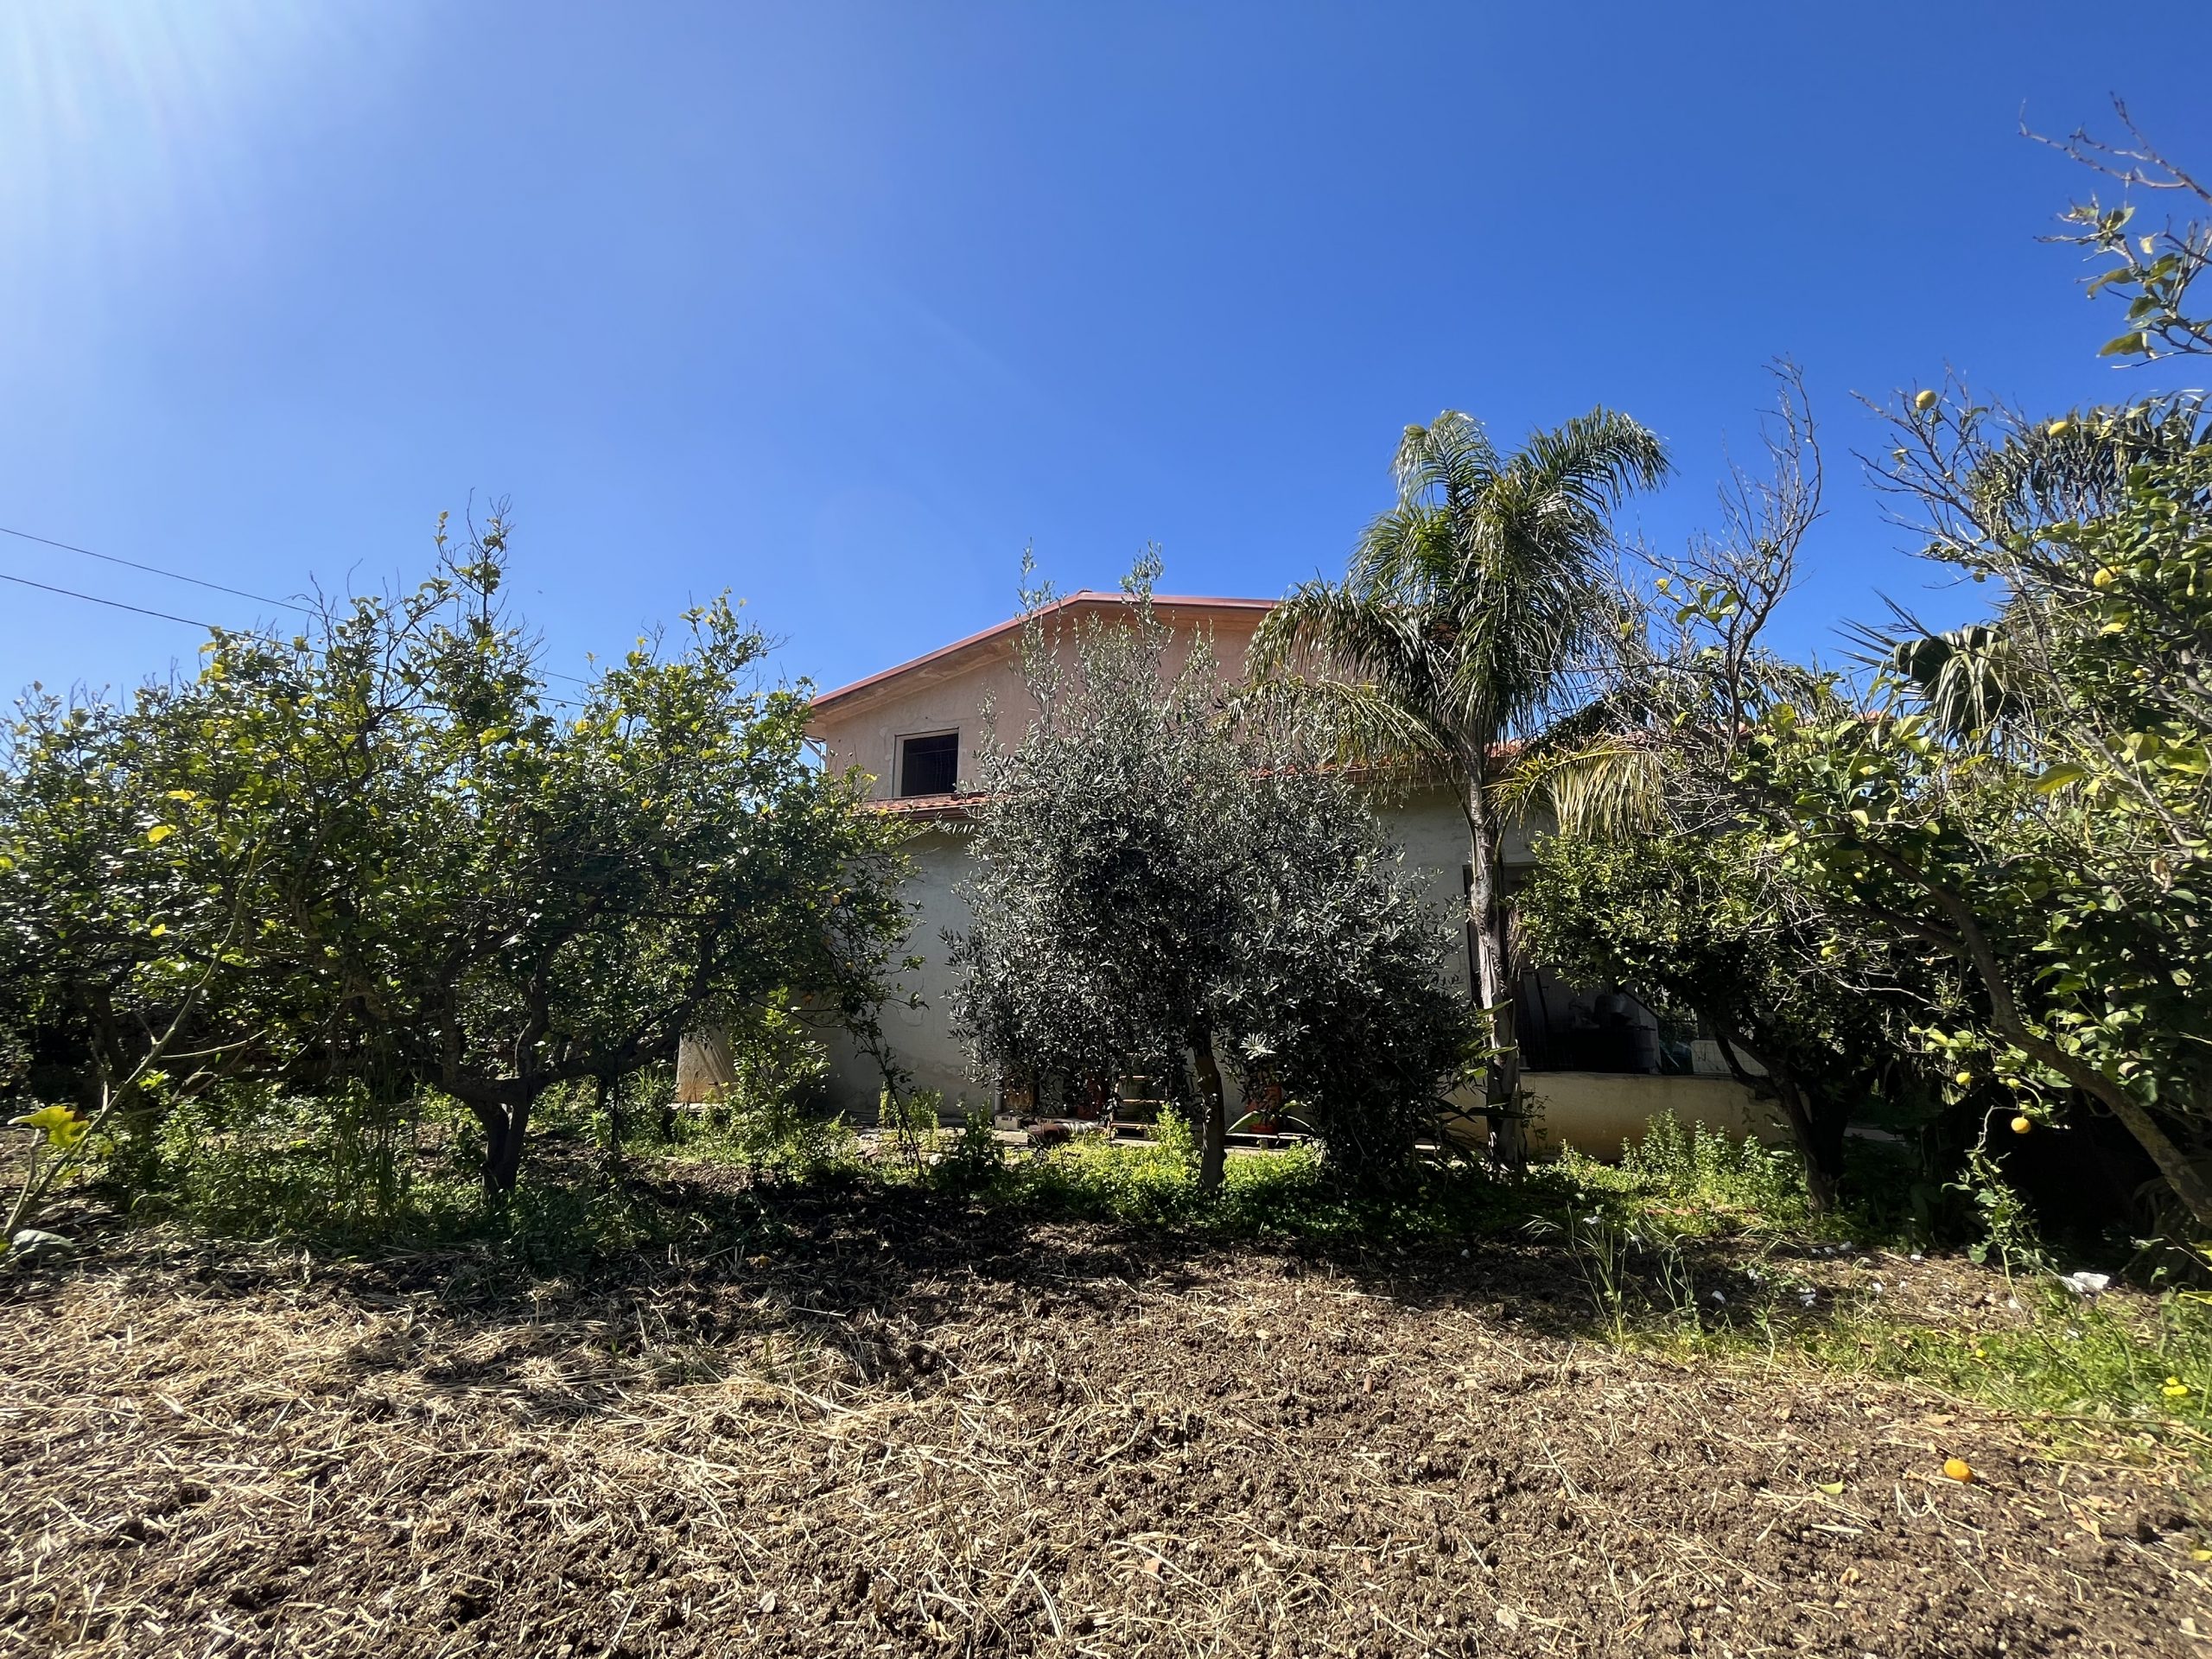 Villa in vendita a Partinico, Contrada Garofalo